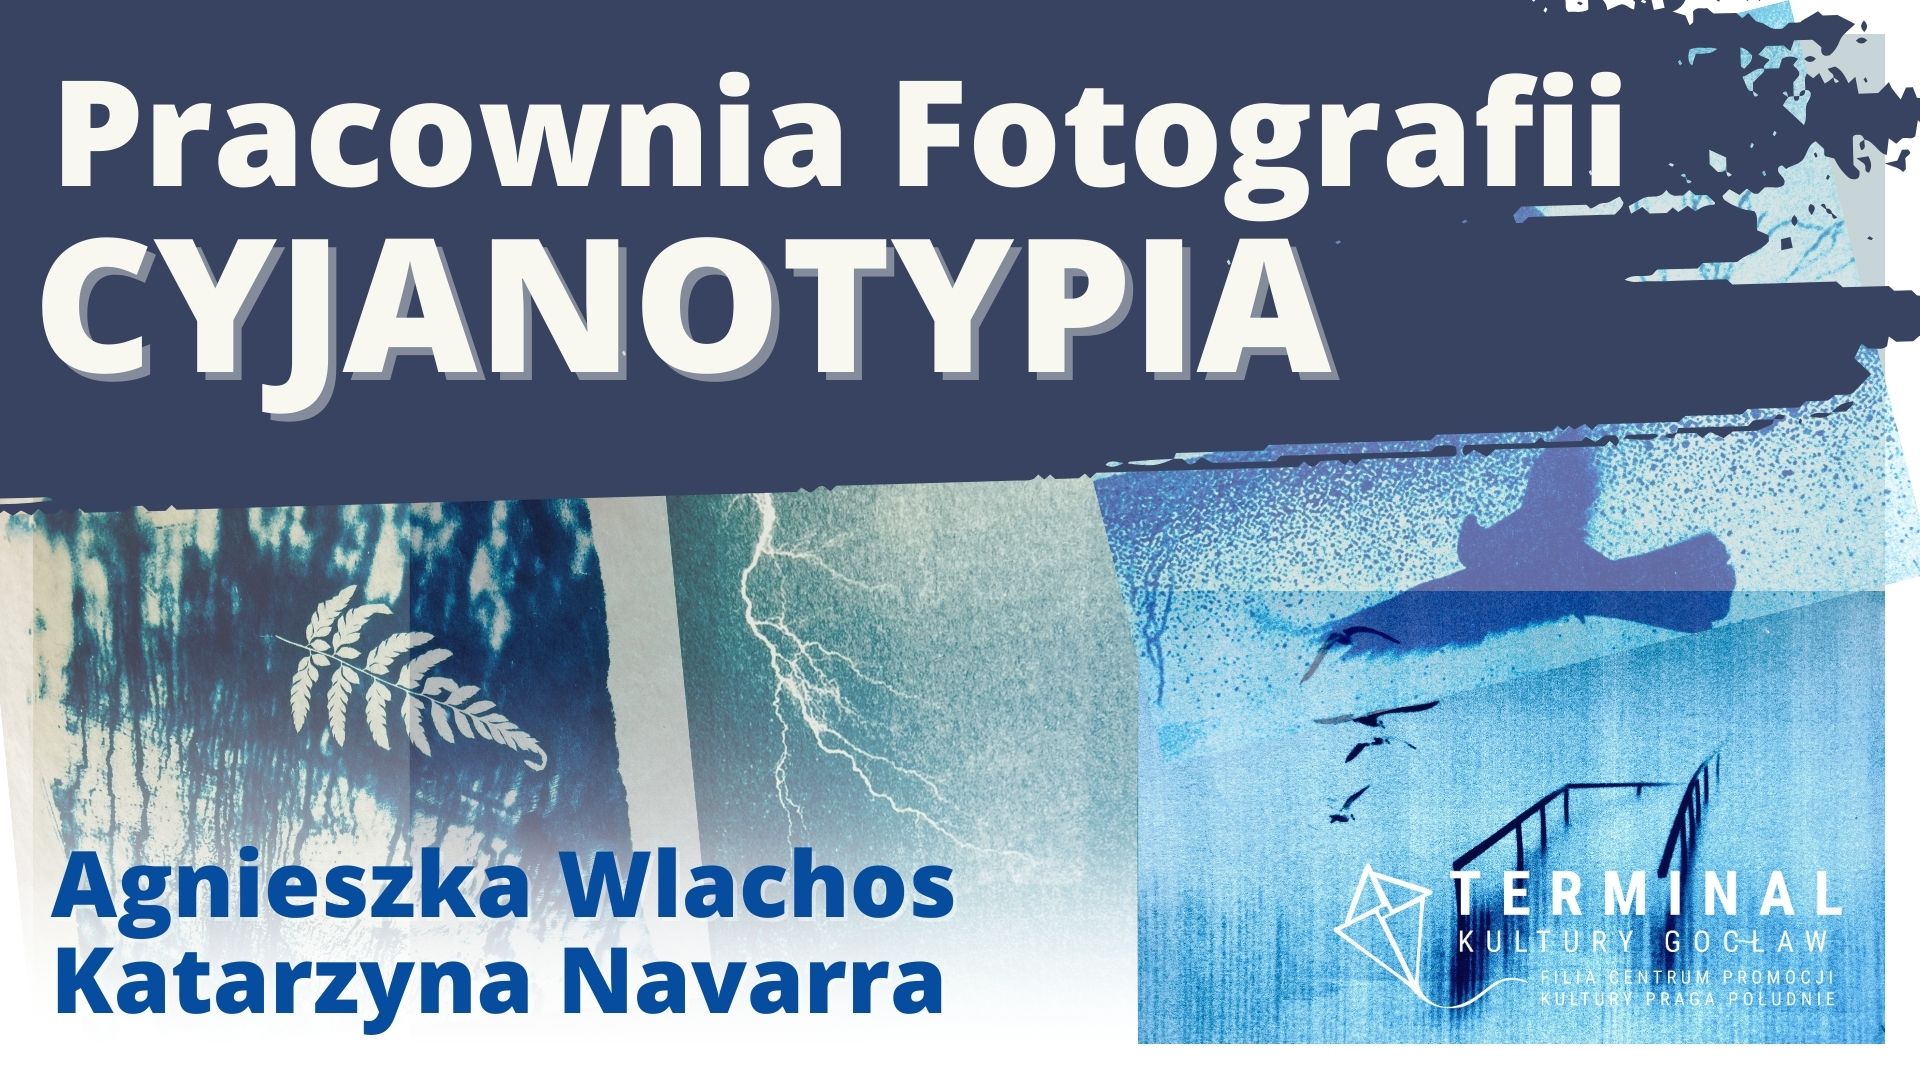 Pracownia Fotografii - Cyjanotypia, Agnieszka Wlachos, Katarzyna Navarra